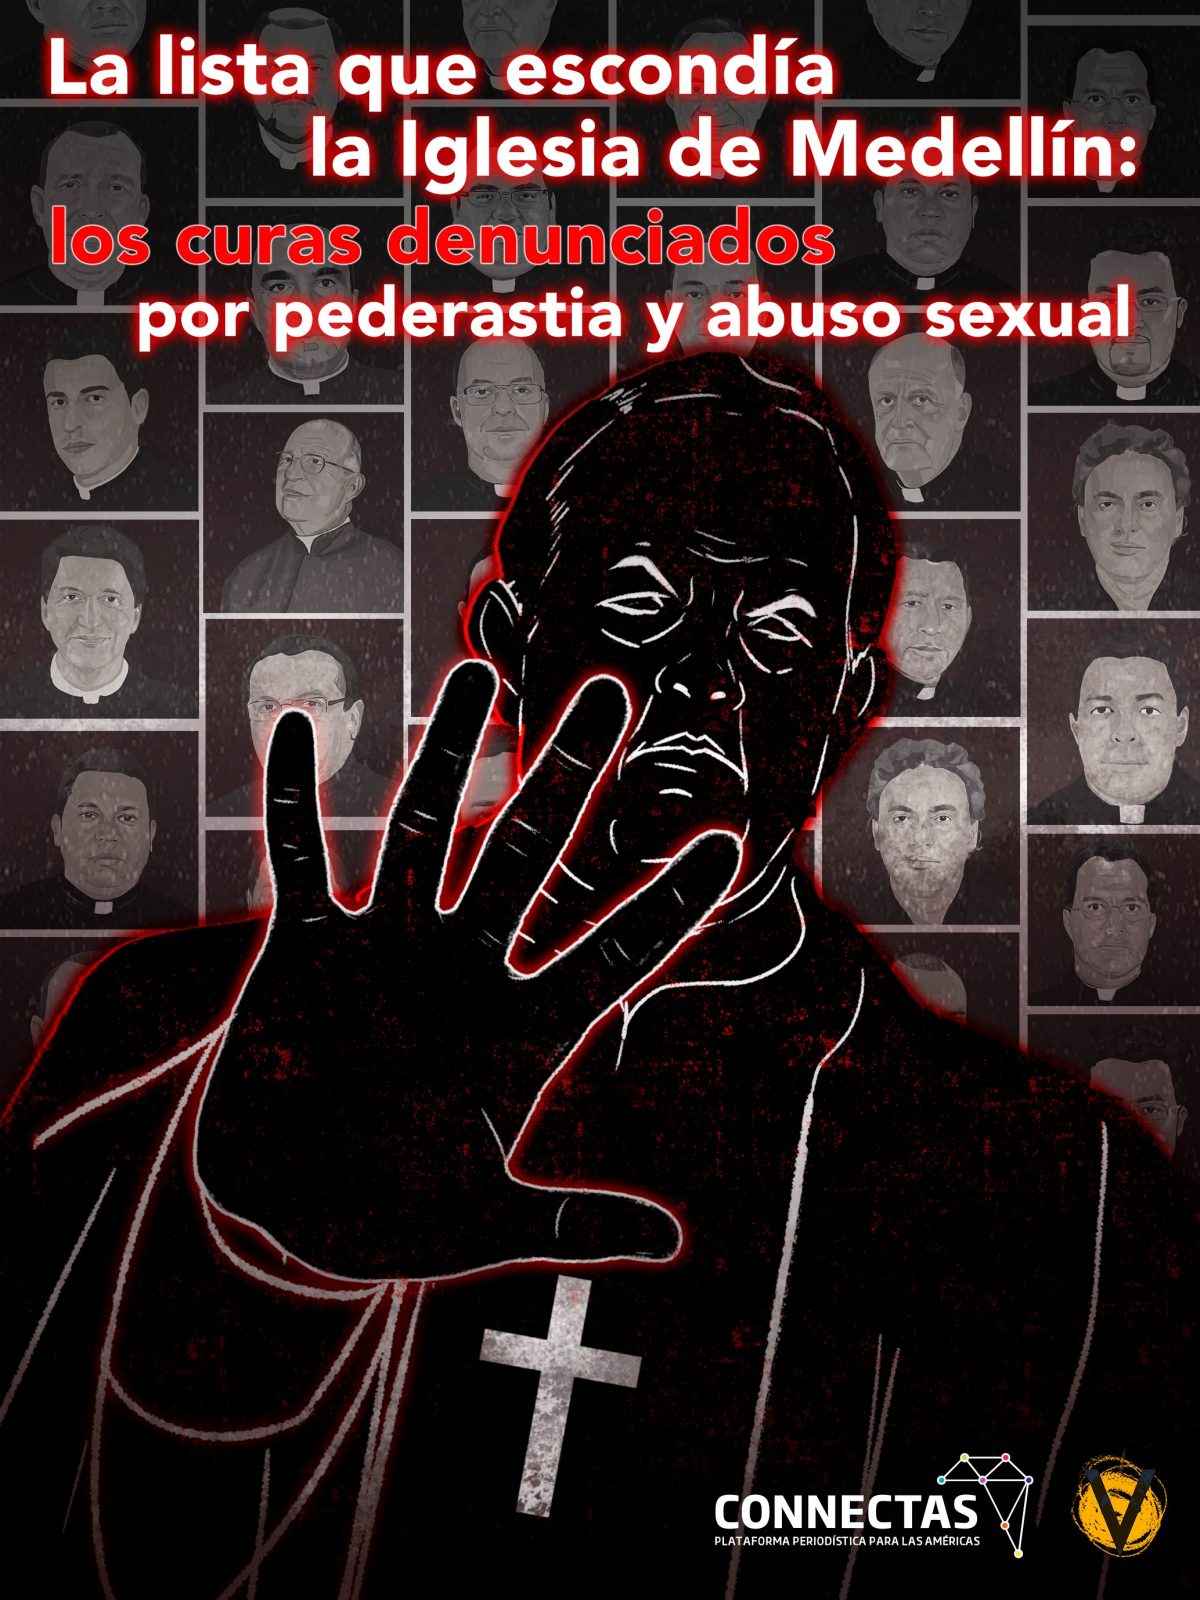 Obispos-y-sacerdotes-ocultaron-denuncias-de-pederastia-en-Medellin-Connectas-Voragine-Colombia-Ricardo-Tobon-V-1-1200x1600-2.jpg